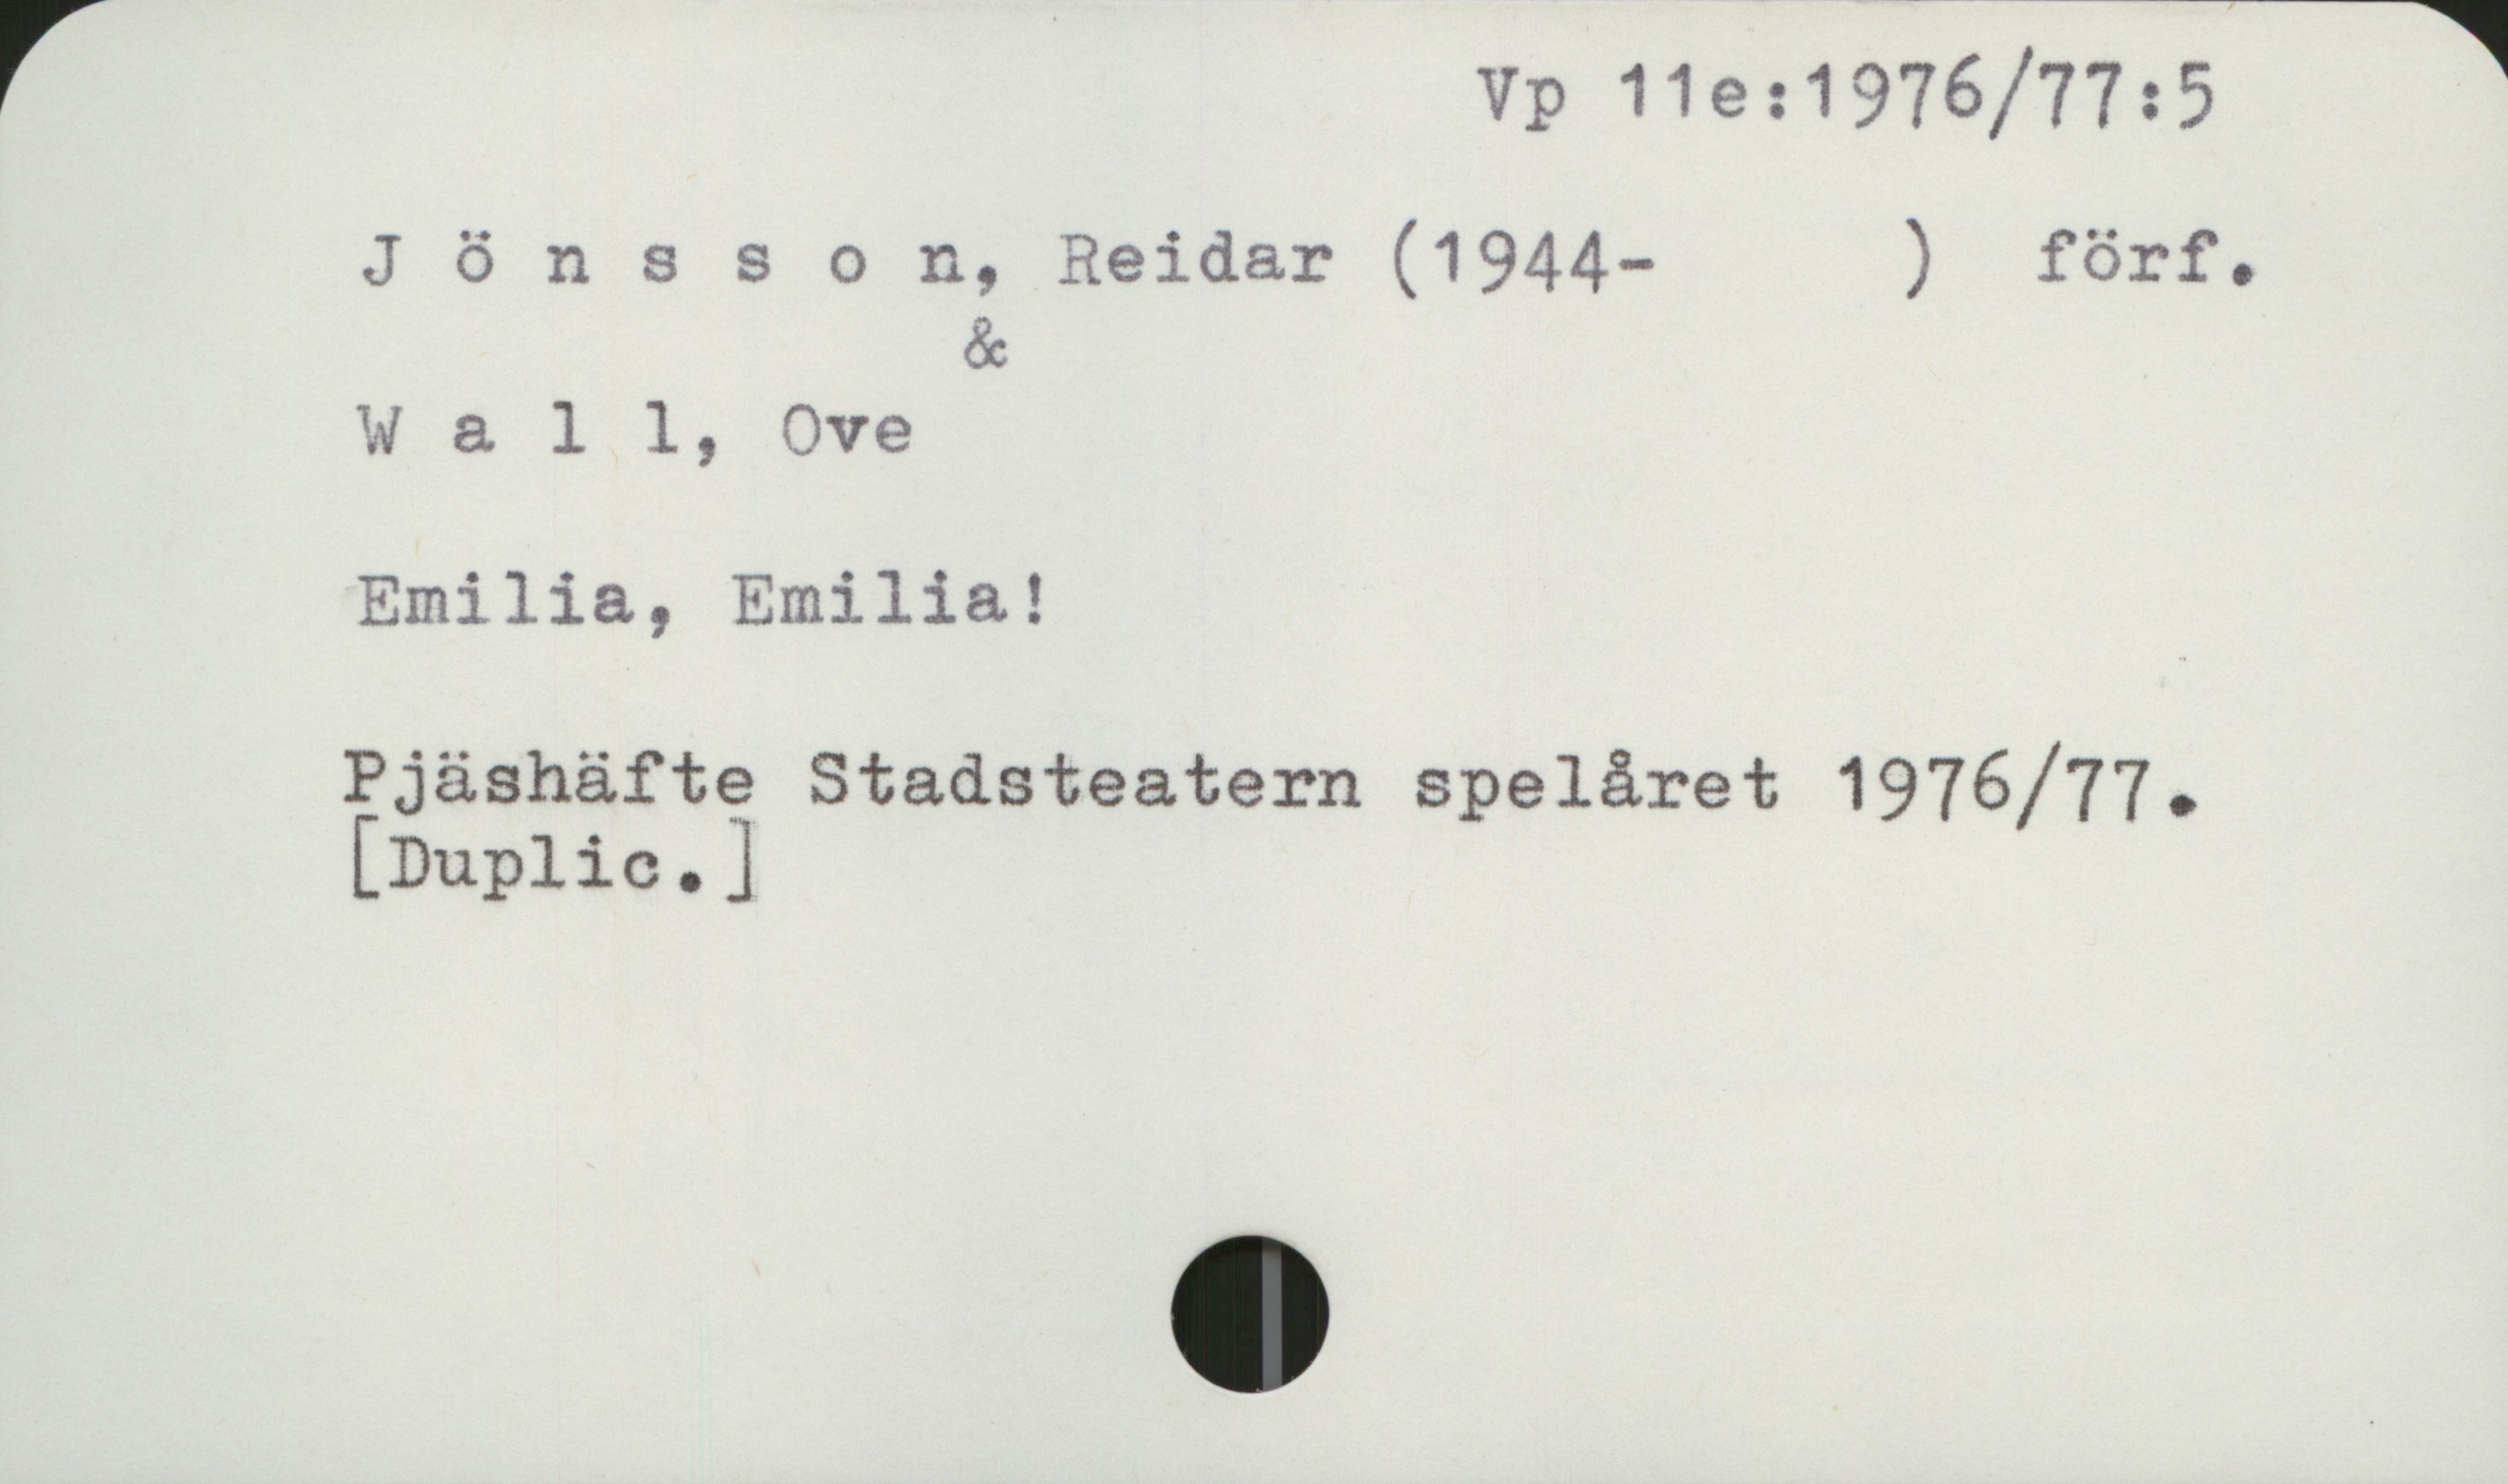 Jönsson, Reidar (1944- ) Vp 11e:1976/77:5

Jönsson, Reidar (1944- ) förf.
                &
Wall, Ove

Emilia, Emilia! 

Pjäshäfte Stadsteatern spelåret 1976/77
[Duplic.]